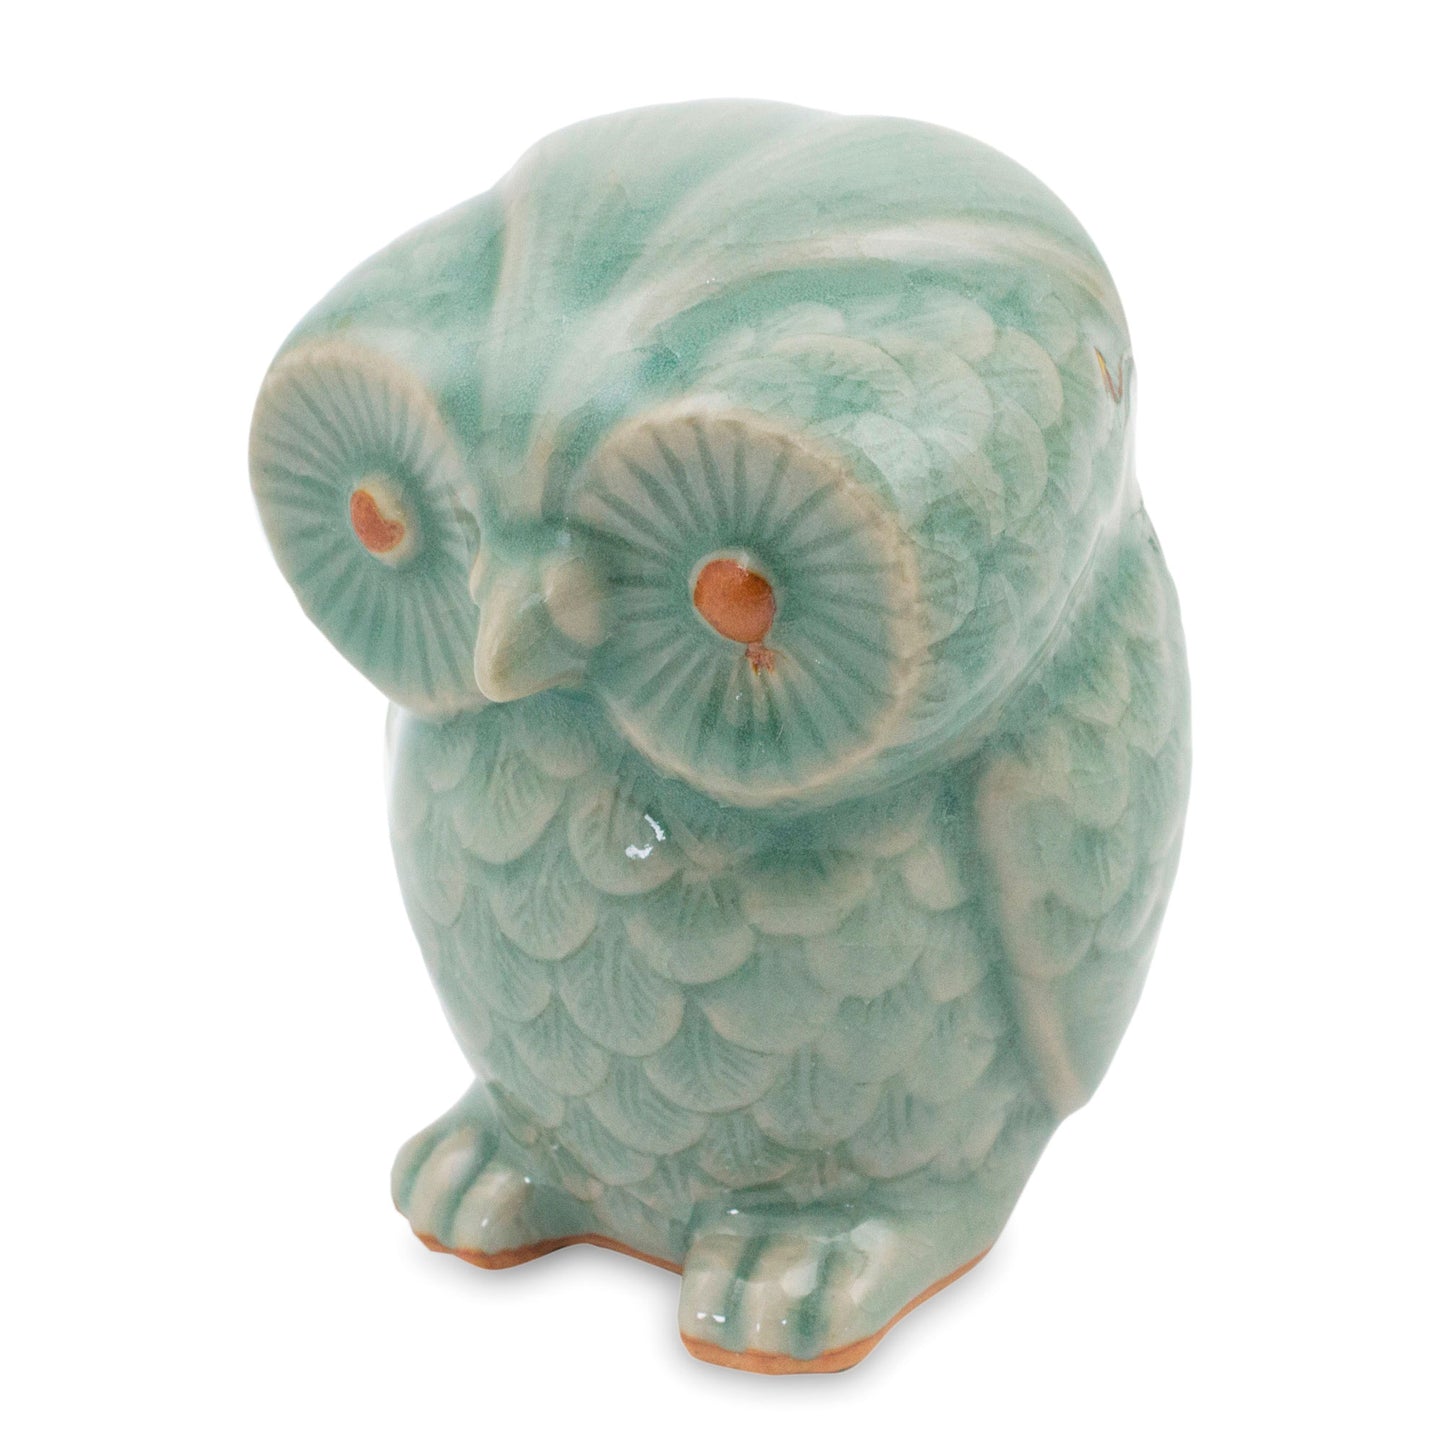 Little Blue Owl Ceramic Figurine